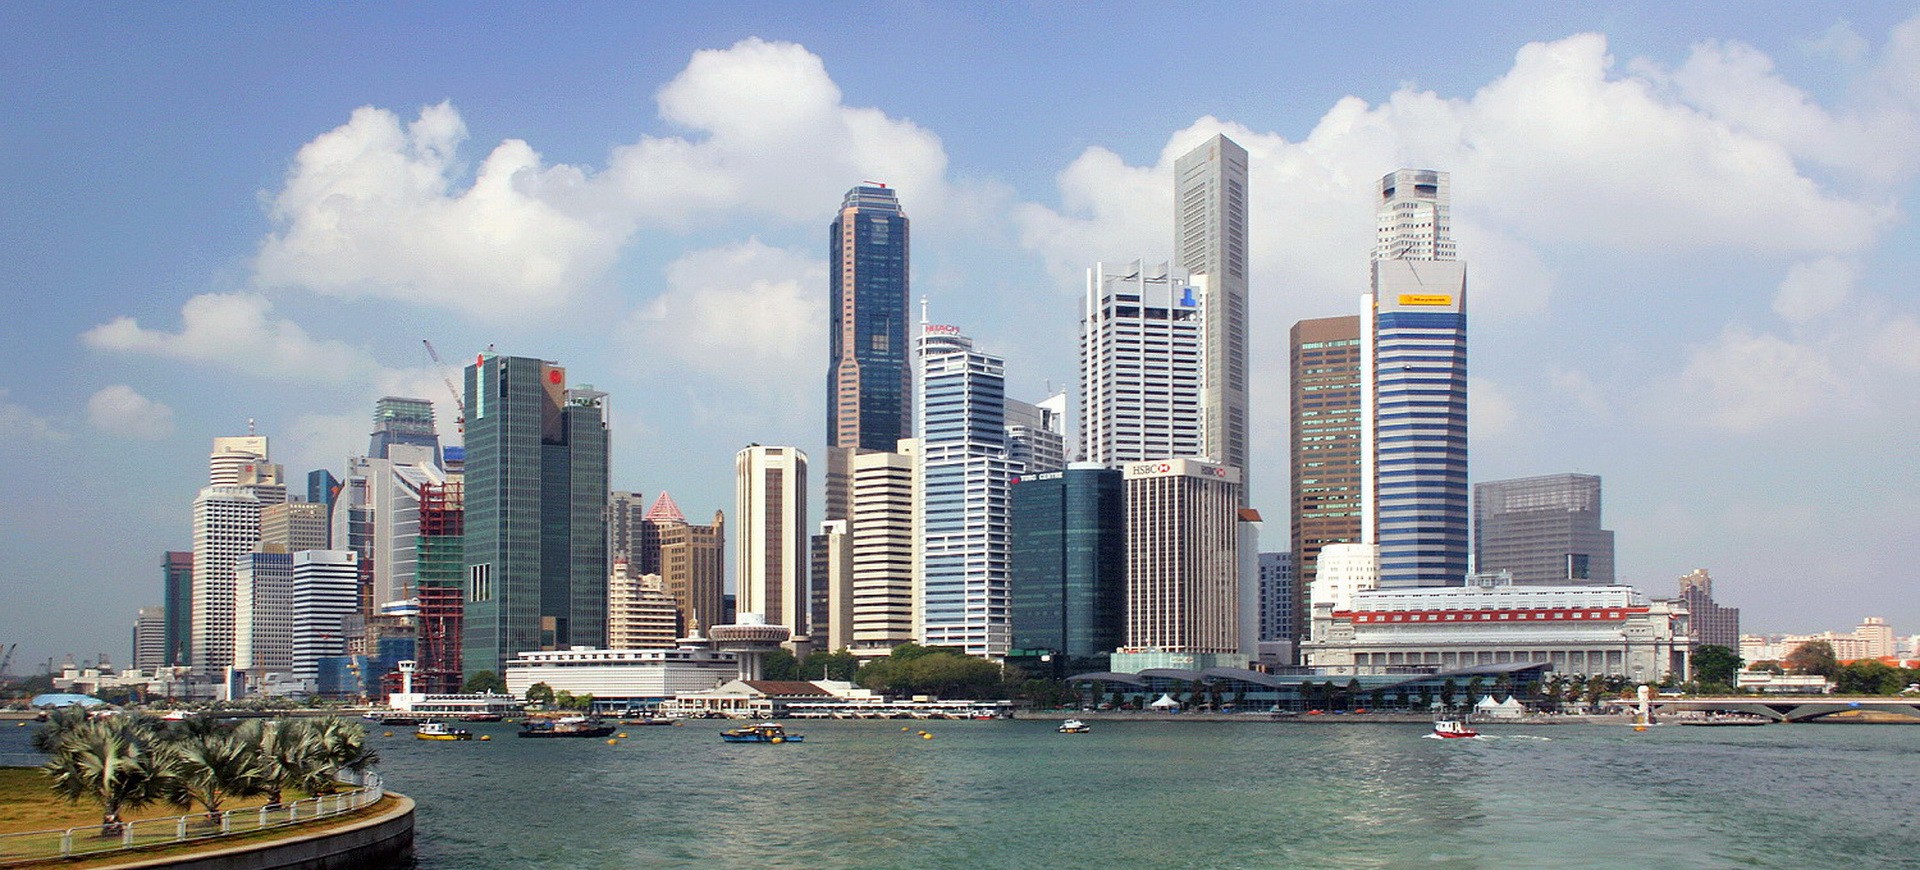 Singapour et ses gratte-ciel